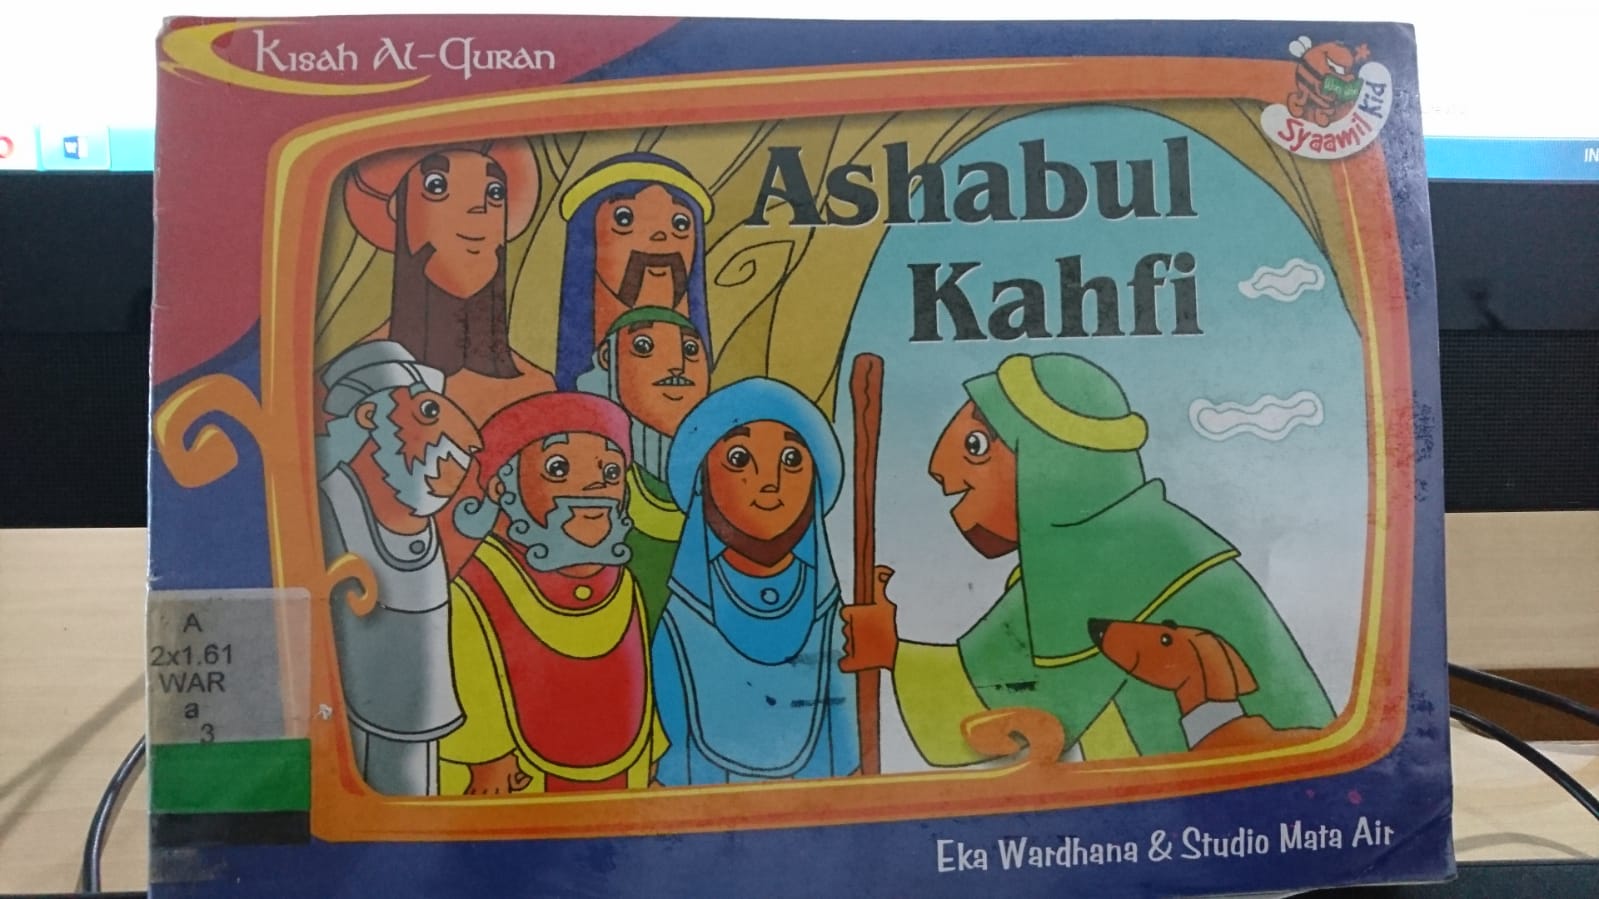 Ashabul kahfi